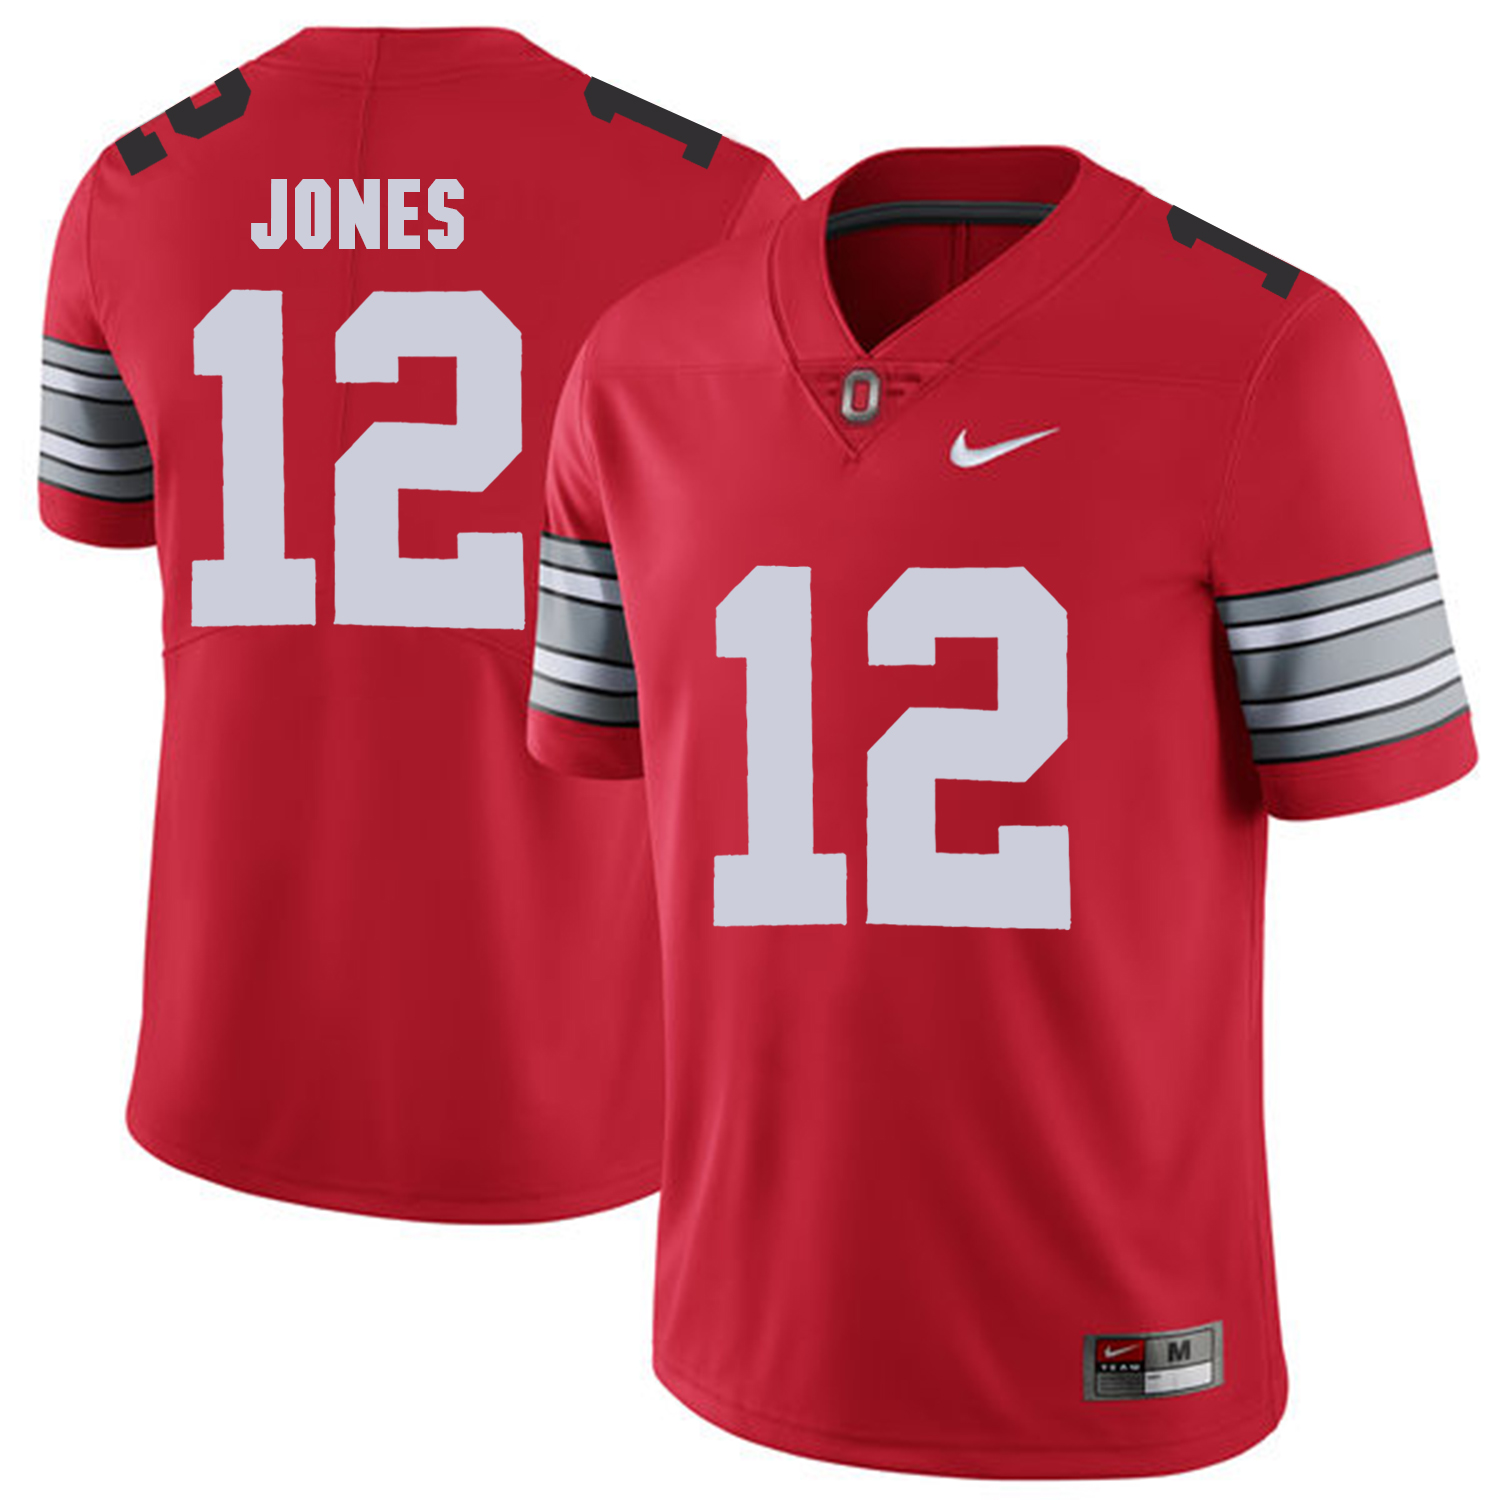 Men Ohio State 12 Jones Red Customized NCAA Jerseys